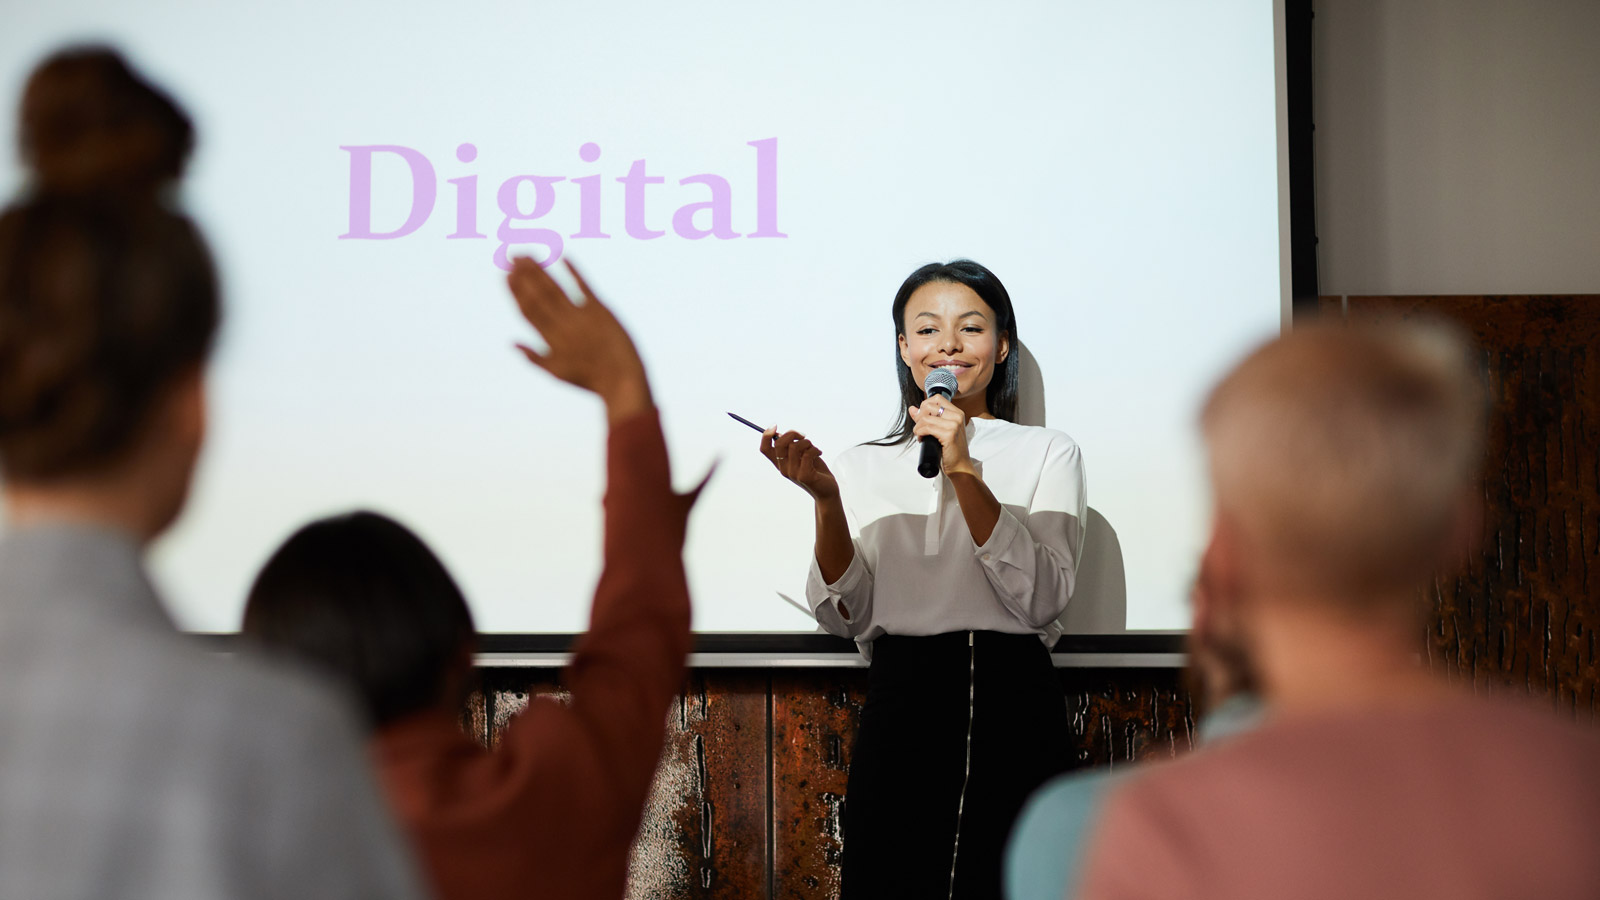 PERMISSION MARKETING kluczowy w strategiach marketingowych Bezpieczeństwo mediarun digital marketing prezentacja 2019